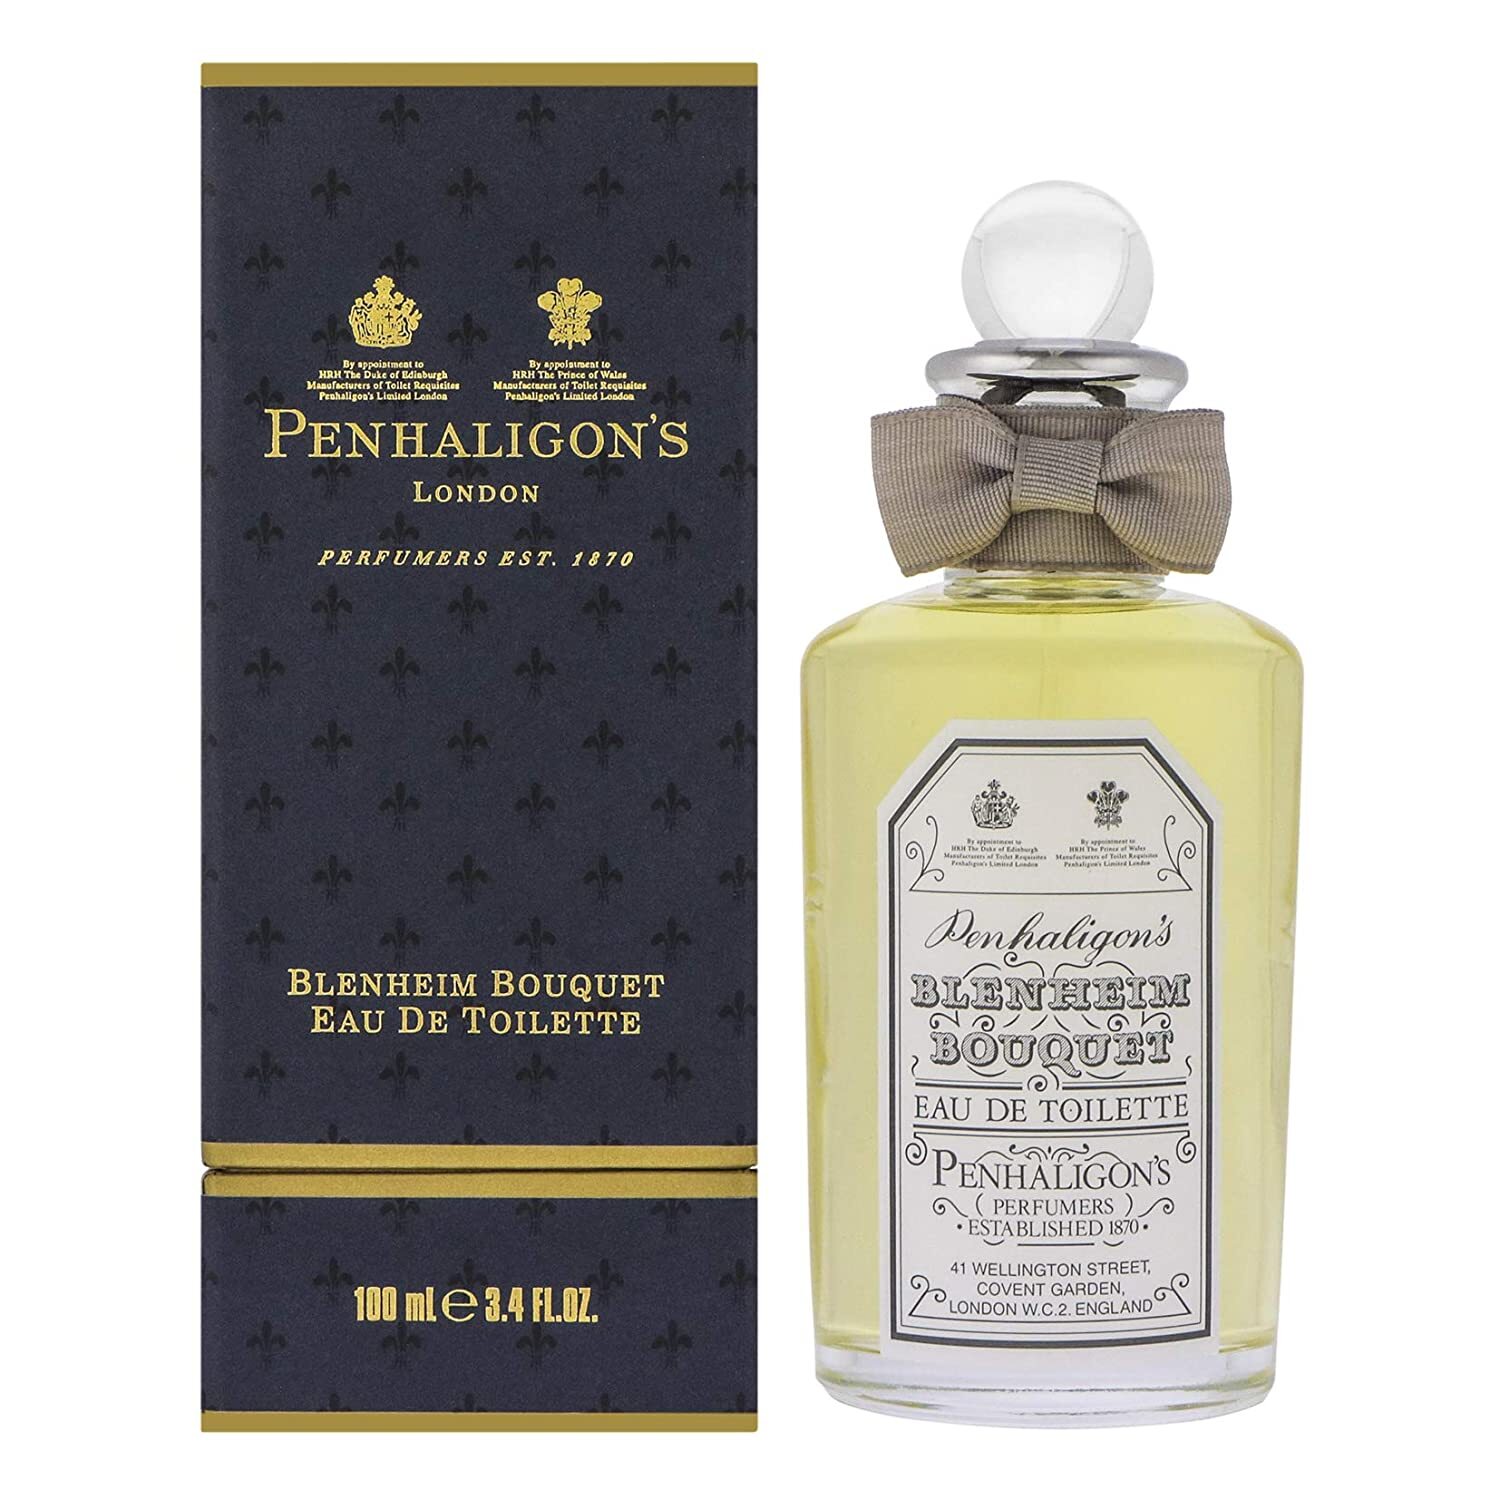 Можна відзначити м'який, ніжний жіночий аромат Penhaligons Artemisia (дубовий мох, ваніль) і класичний чоловічий Blenheim Bouquet з традиційної англійської лавандою